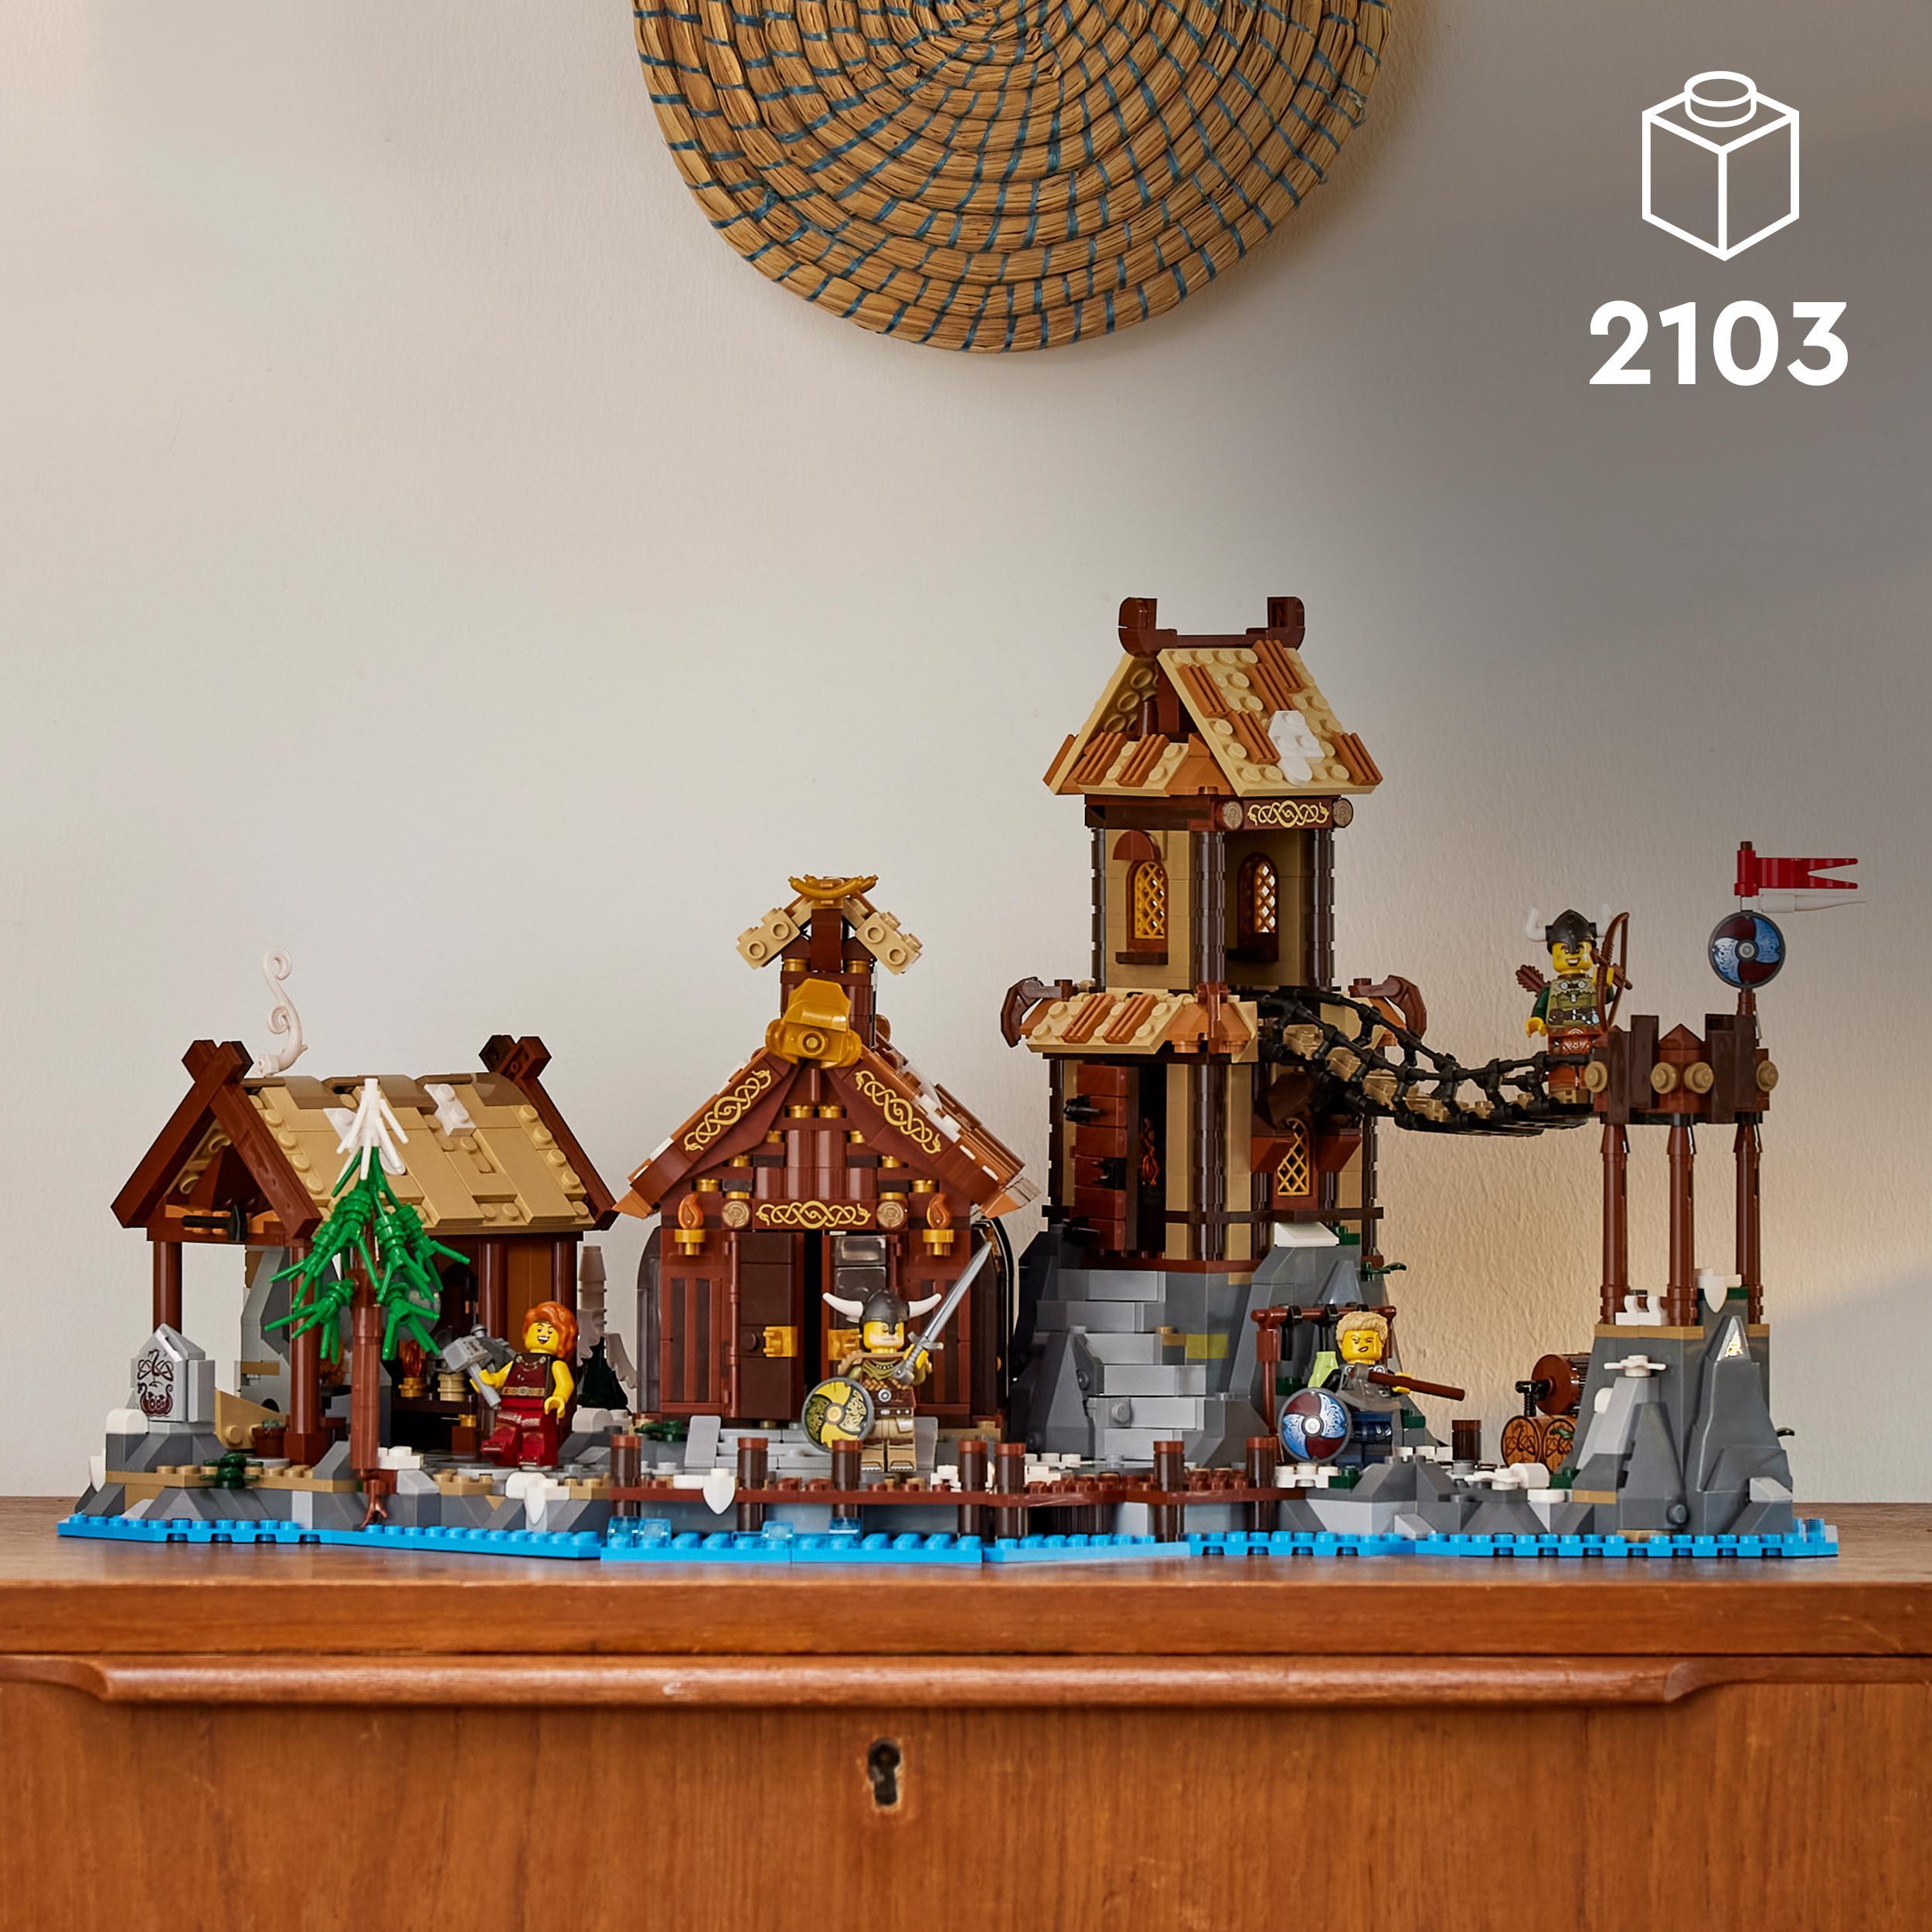 LEGO IDEAS 21343 VILLAGGIO VICHINGO, KIT MODELLISMO PER ADULTI DA COSTRUIRE,  GRANDE SET IDEA REGALO UOMO, DONNA, LUI E LEI - Toys Center